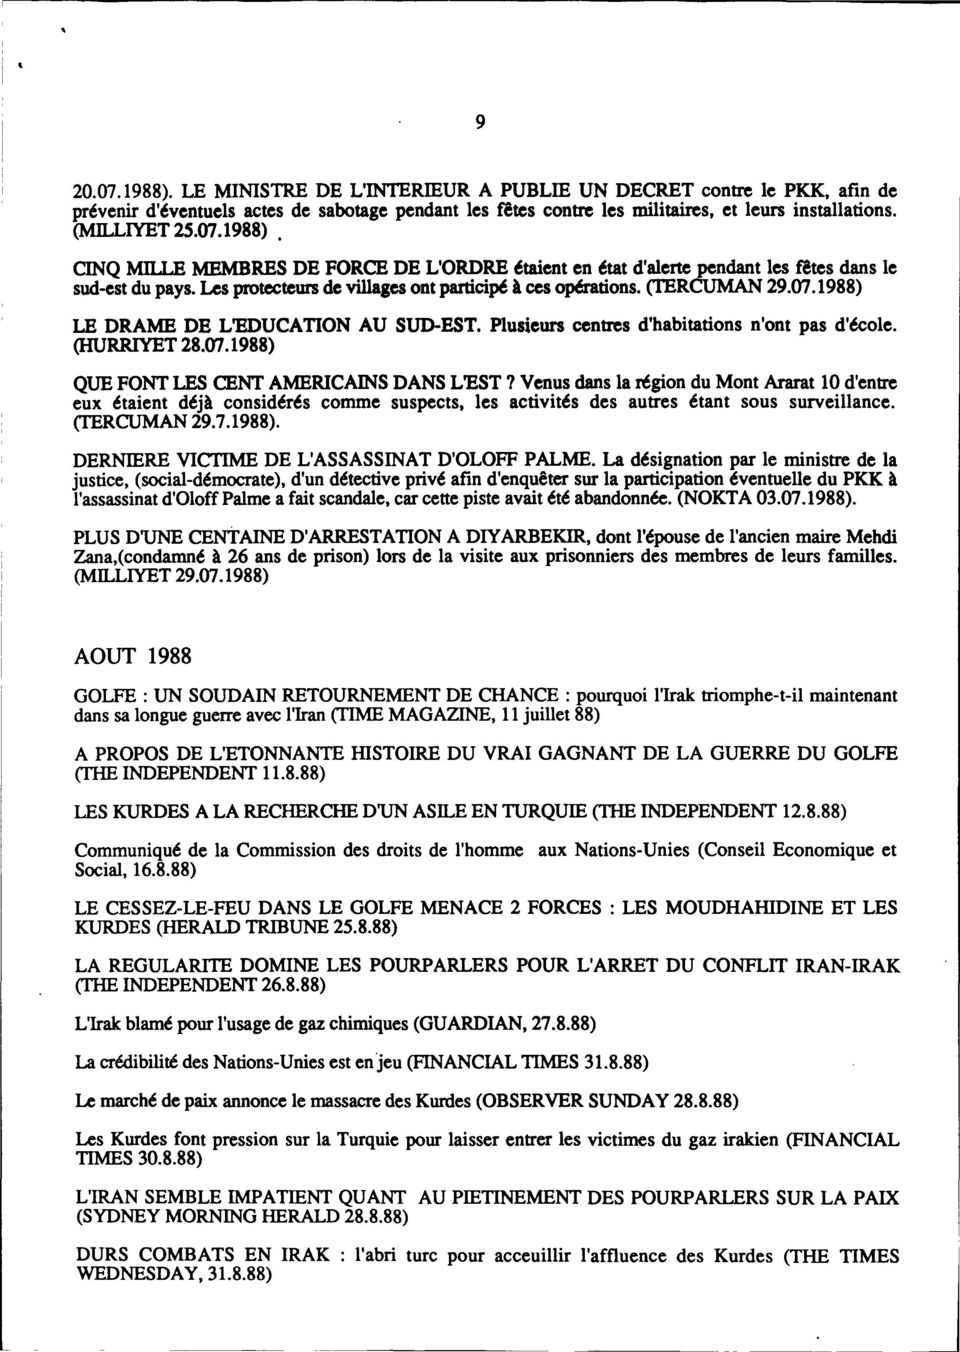 (TERCUMAN 29.07.1988) LE DRAME DE L'EDUCATION AU SUD-EST. Plusieurs centres d'habitations (HURRIYET 28.07.1988) n'ont pas d'école.